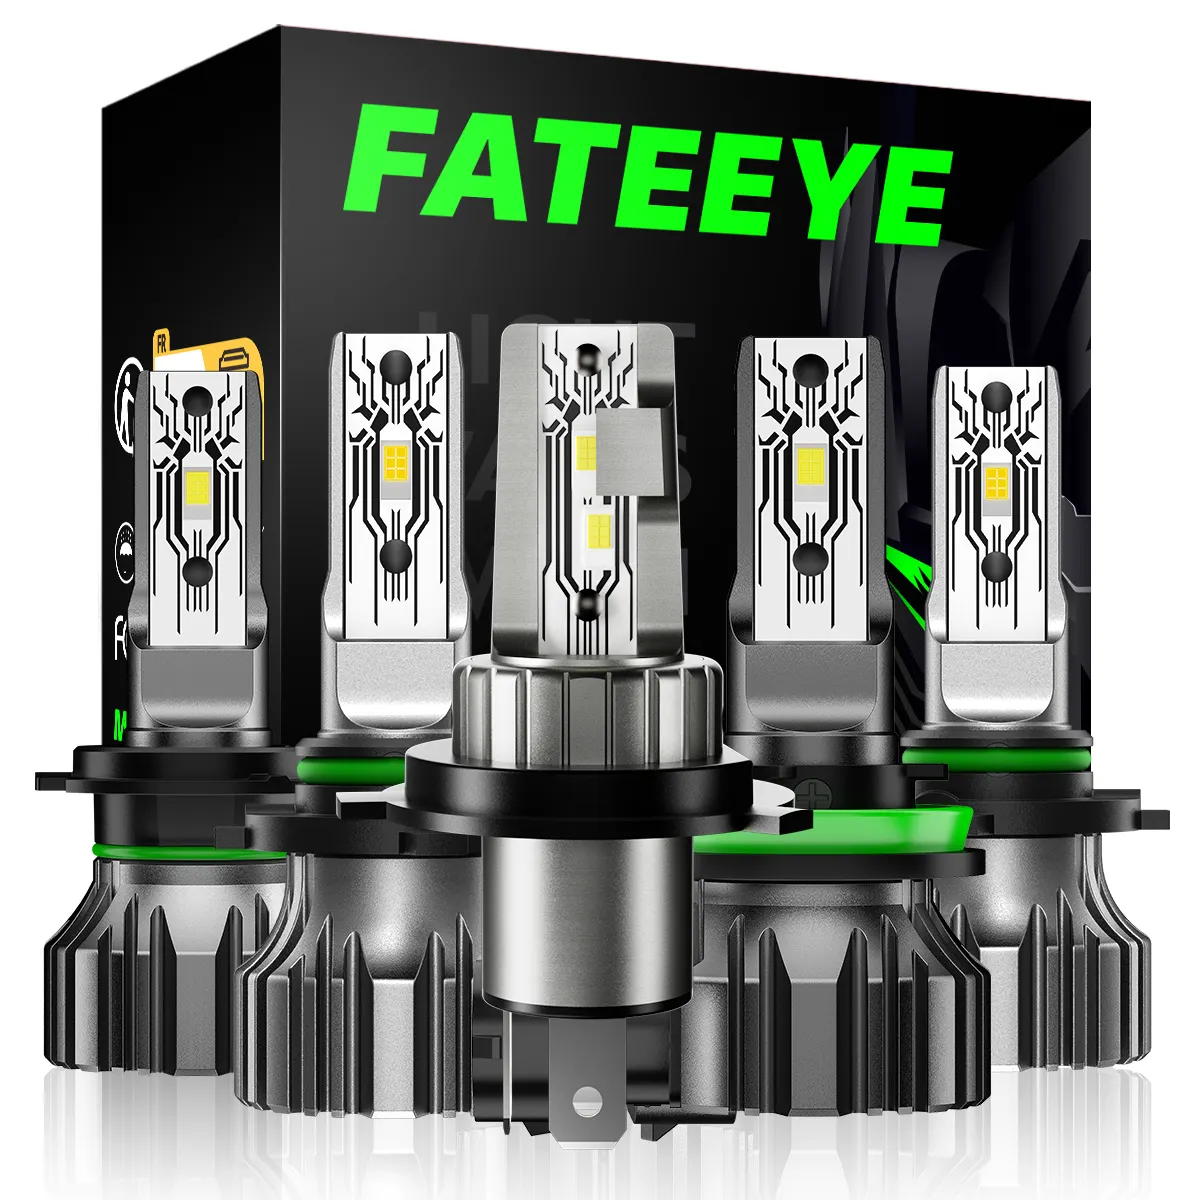 Fateeye ไฟหน้า LED 10000ลูเมนสำหรับมอเตอร์ไซค์ไฟตัดหมอก/ขับรถ H7 HB3 H11 9005ไฟหน้า LED 50W